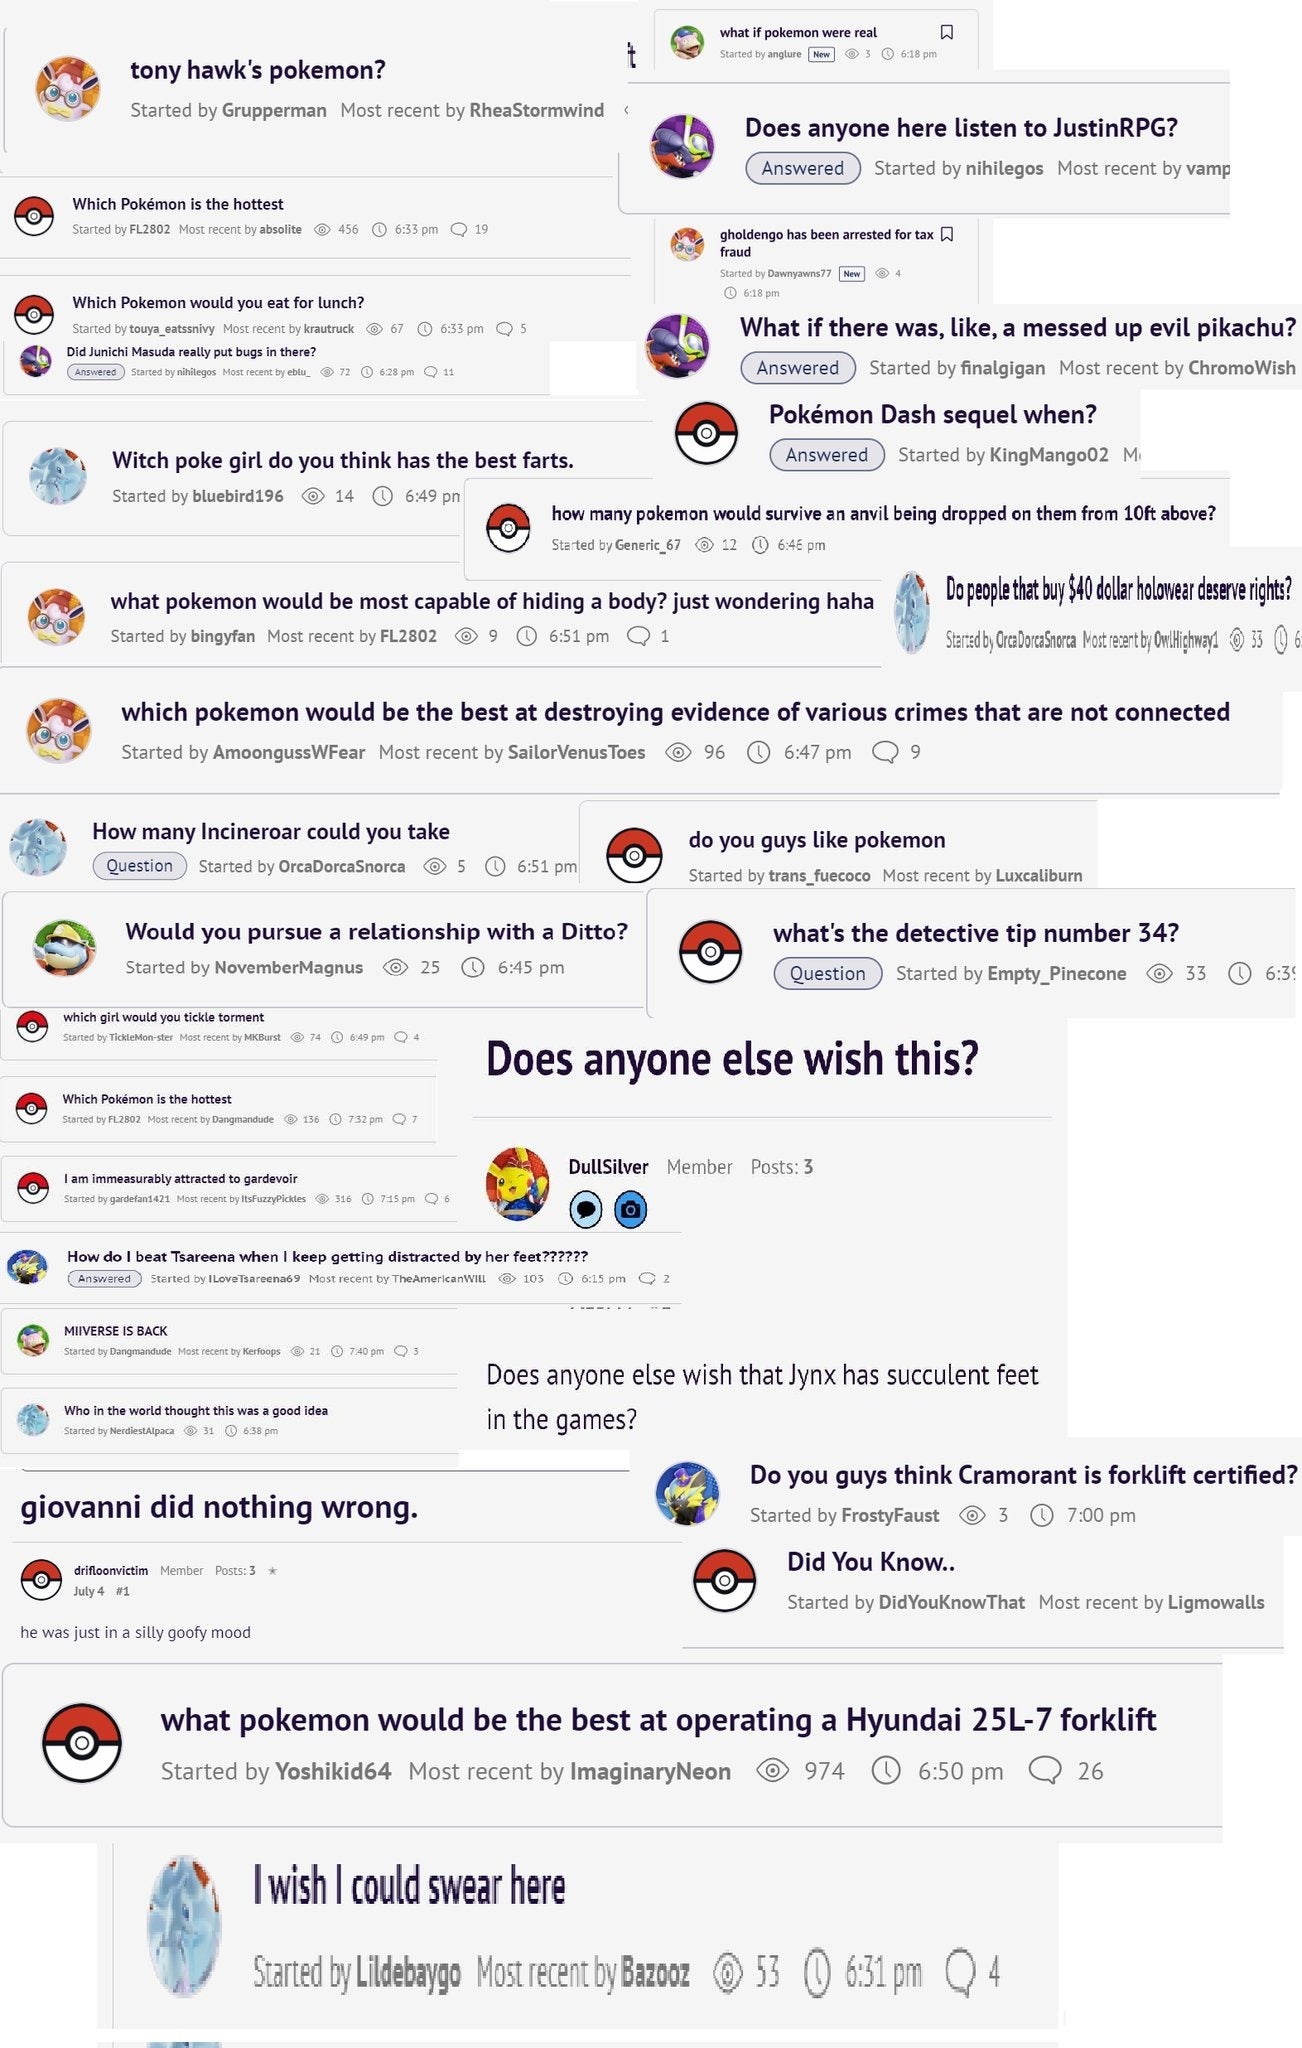 Se presentan numerosos temas de los foros de Pokémon, que van desde lo hilarante hasta lo extremadamente condenatorio.